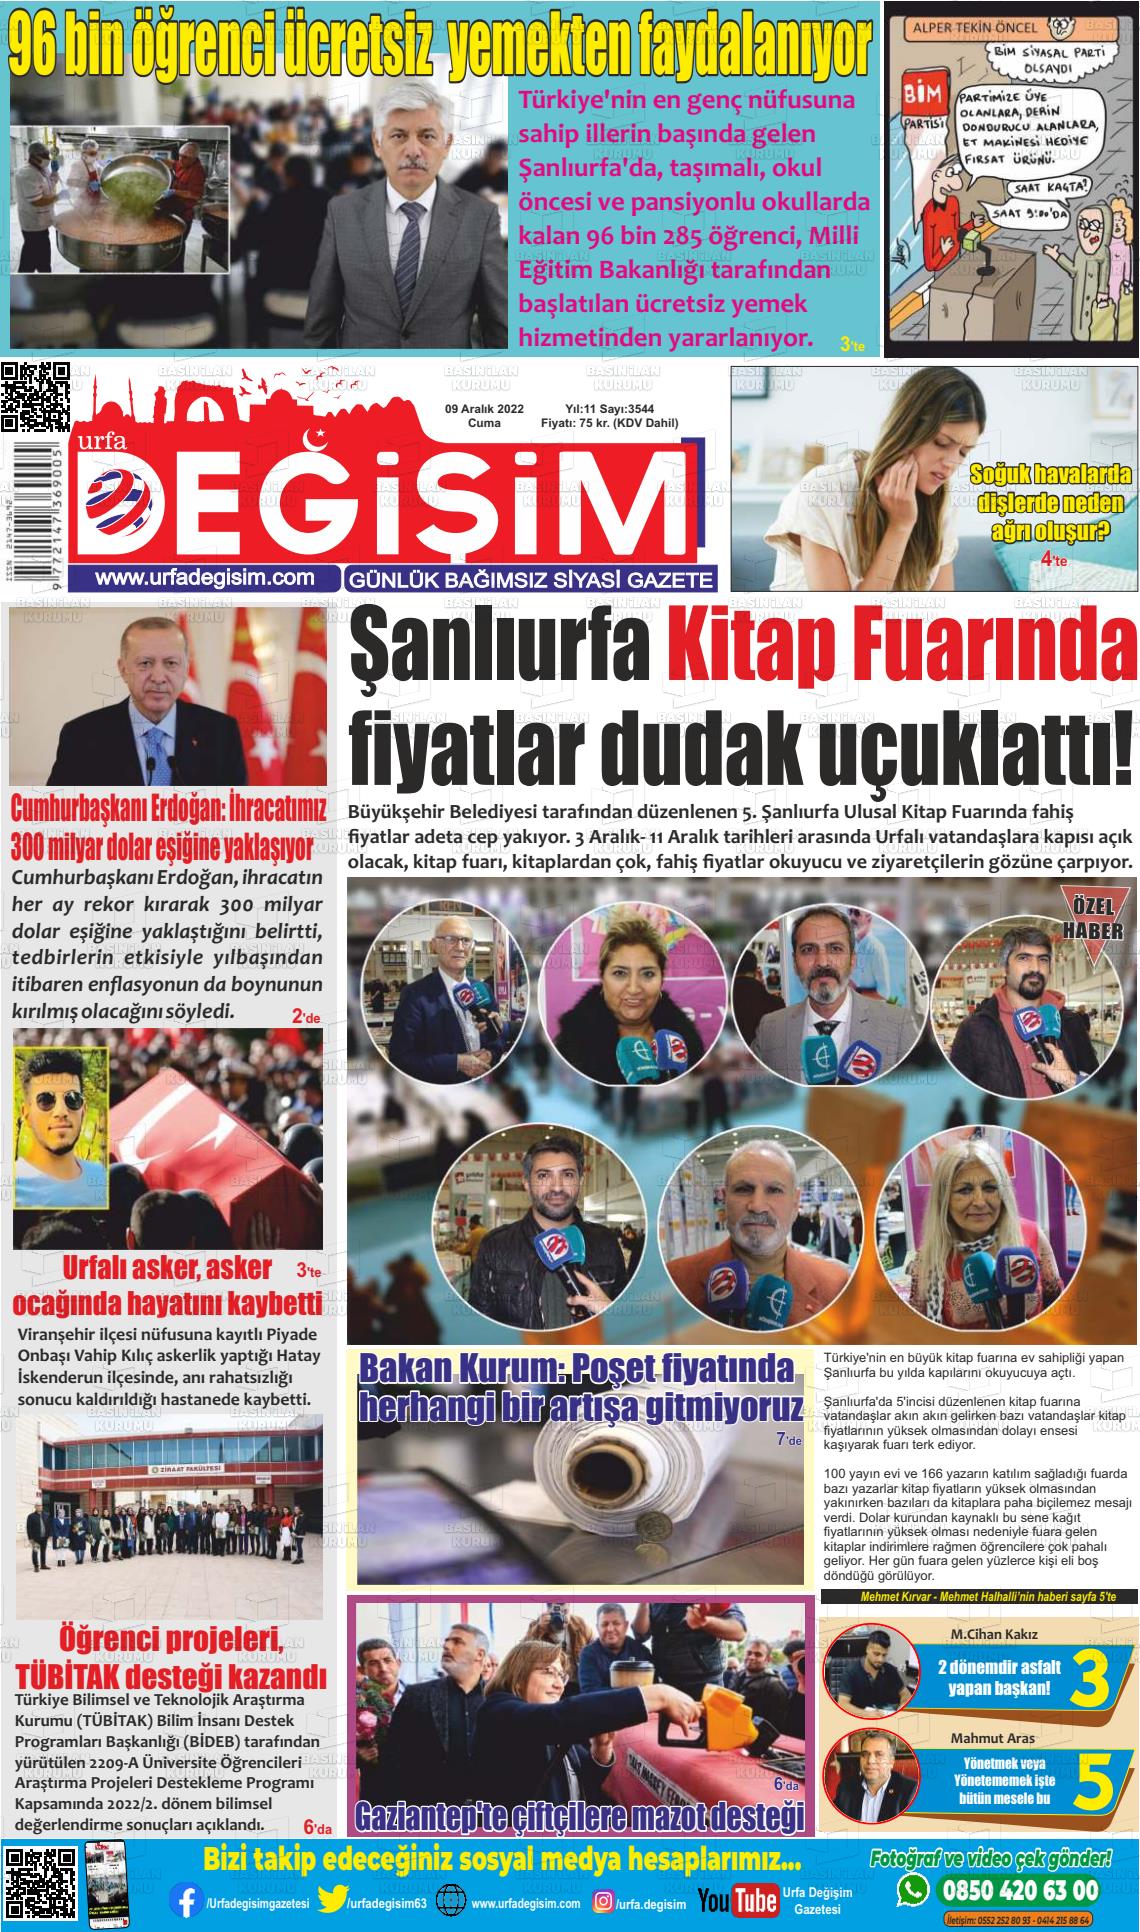 09 Aralık 2022 Urfa Değişim Gazete Manşeti